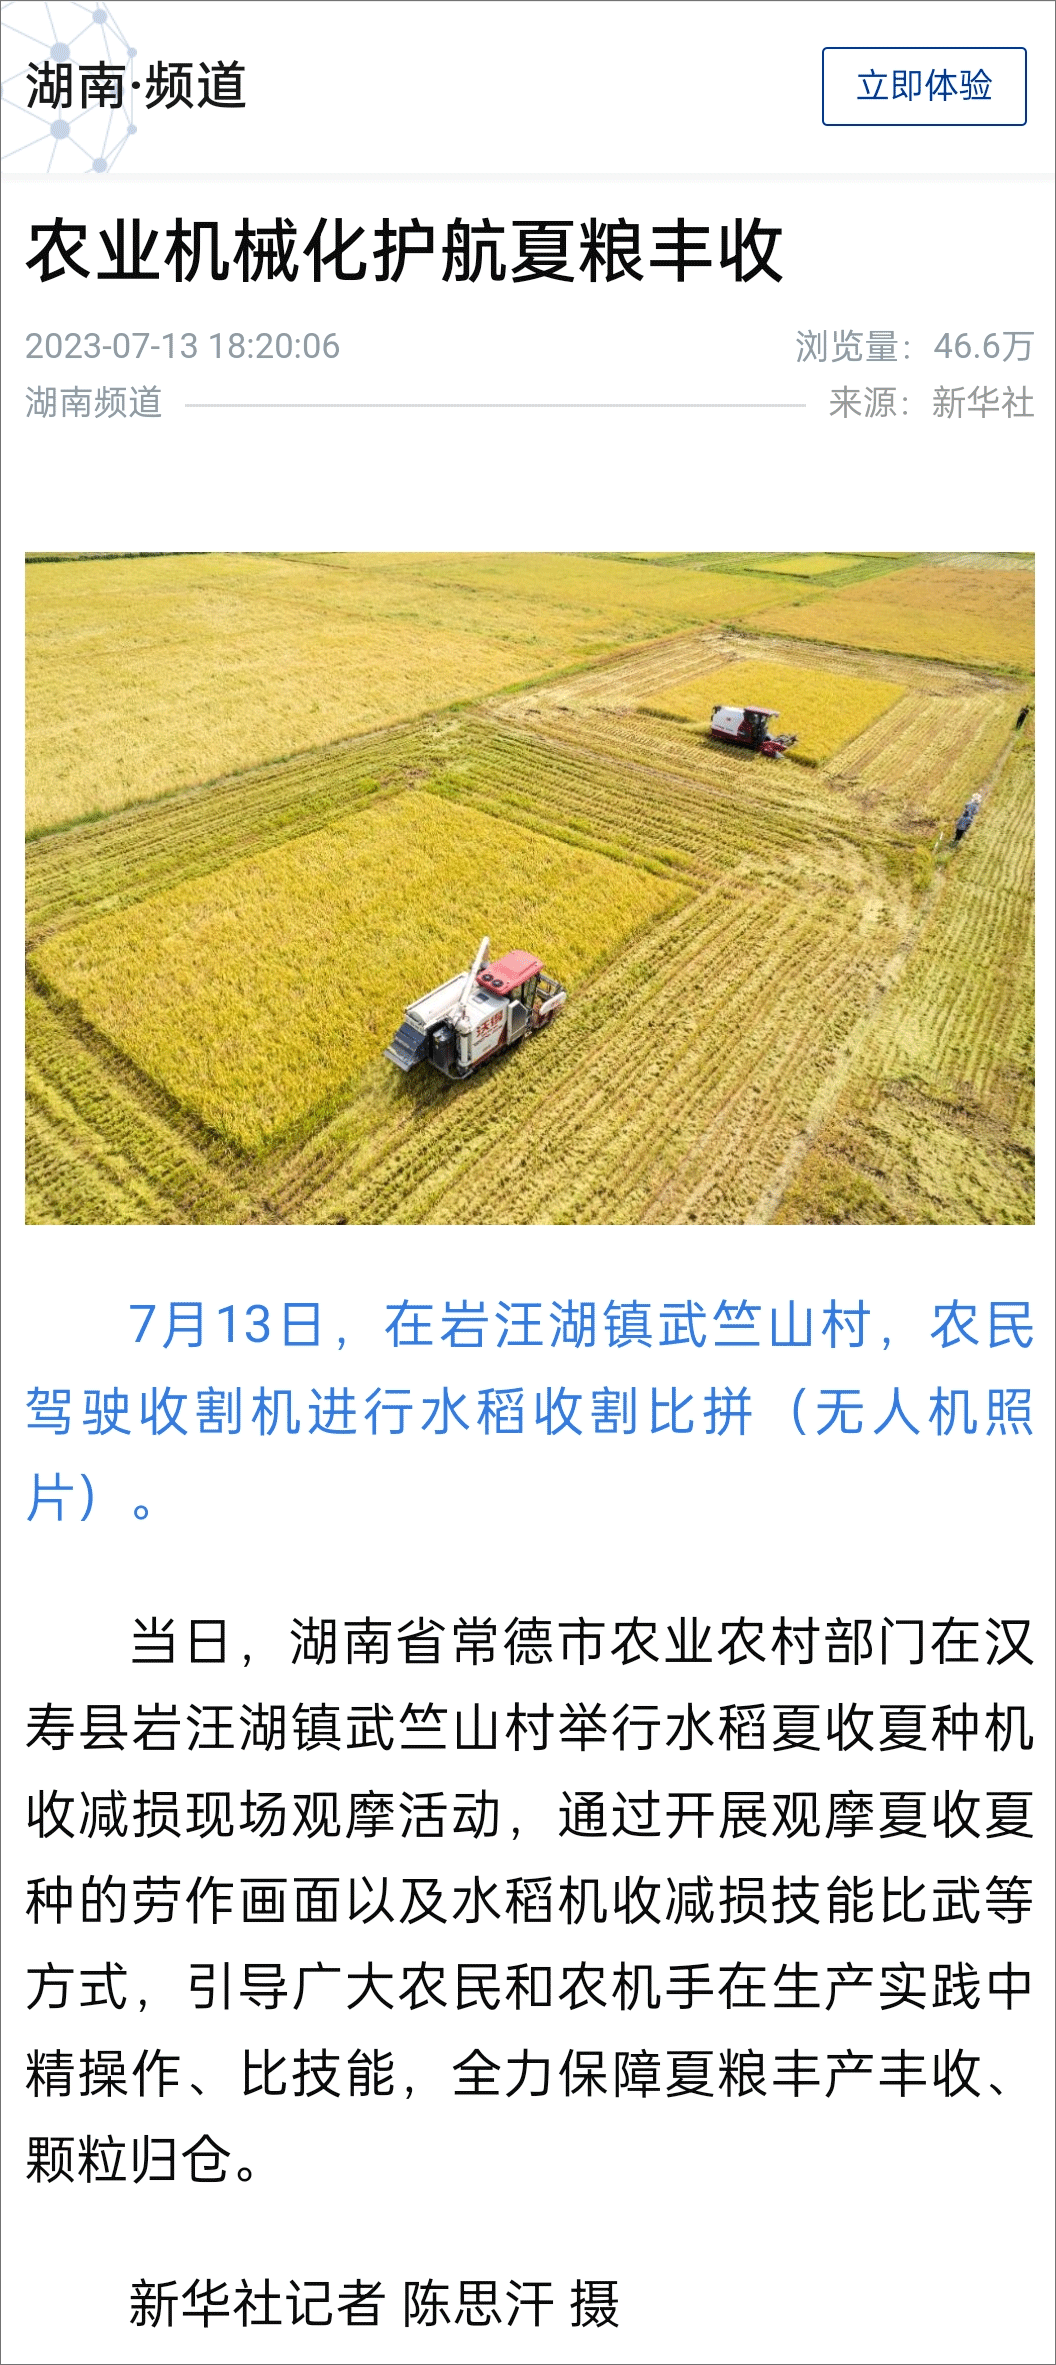 中国农业新闻网_农业图片新闻_新闻农业图片高清/